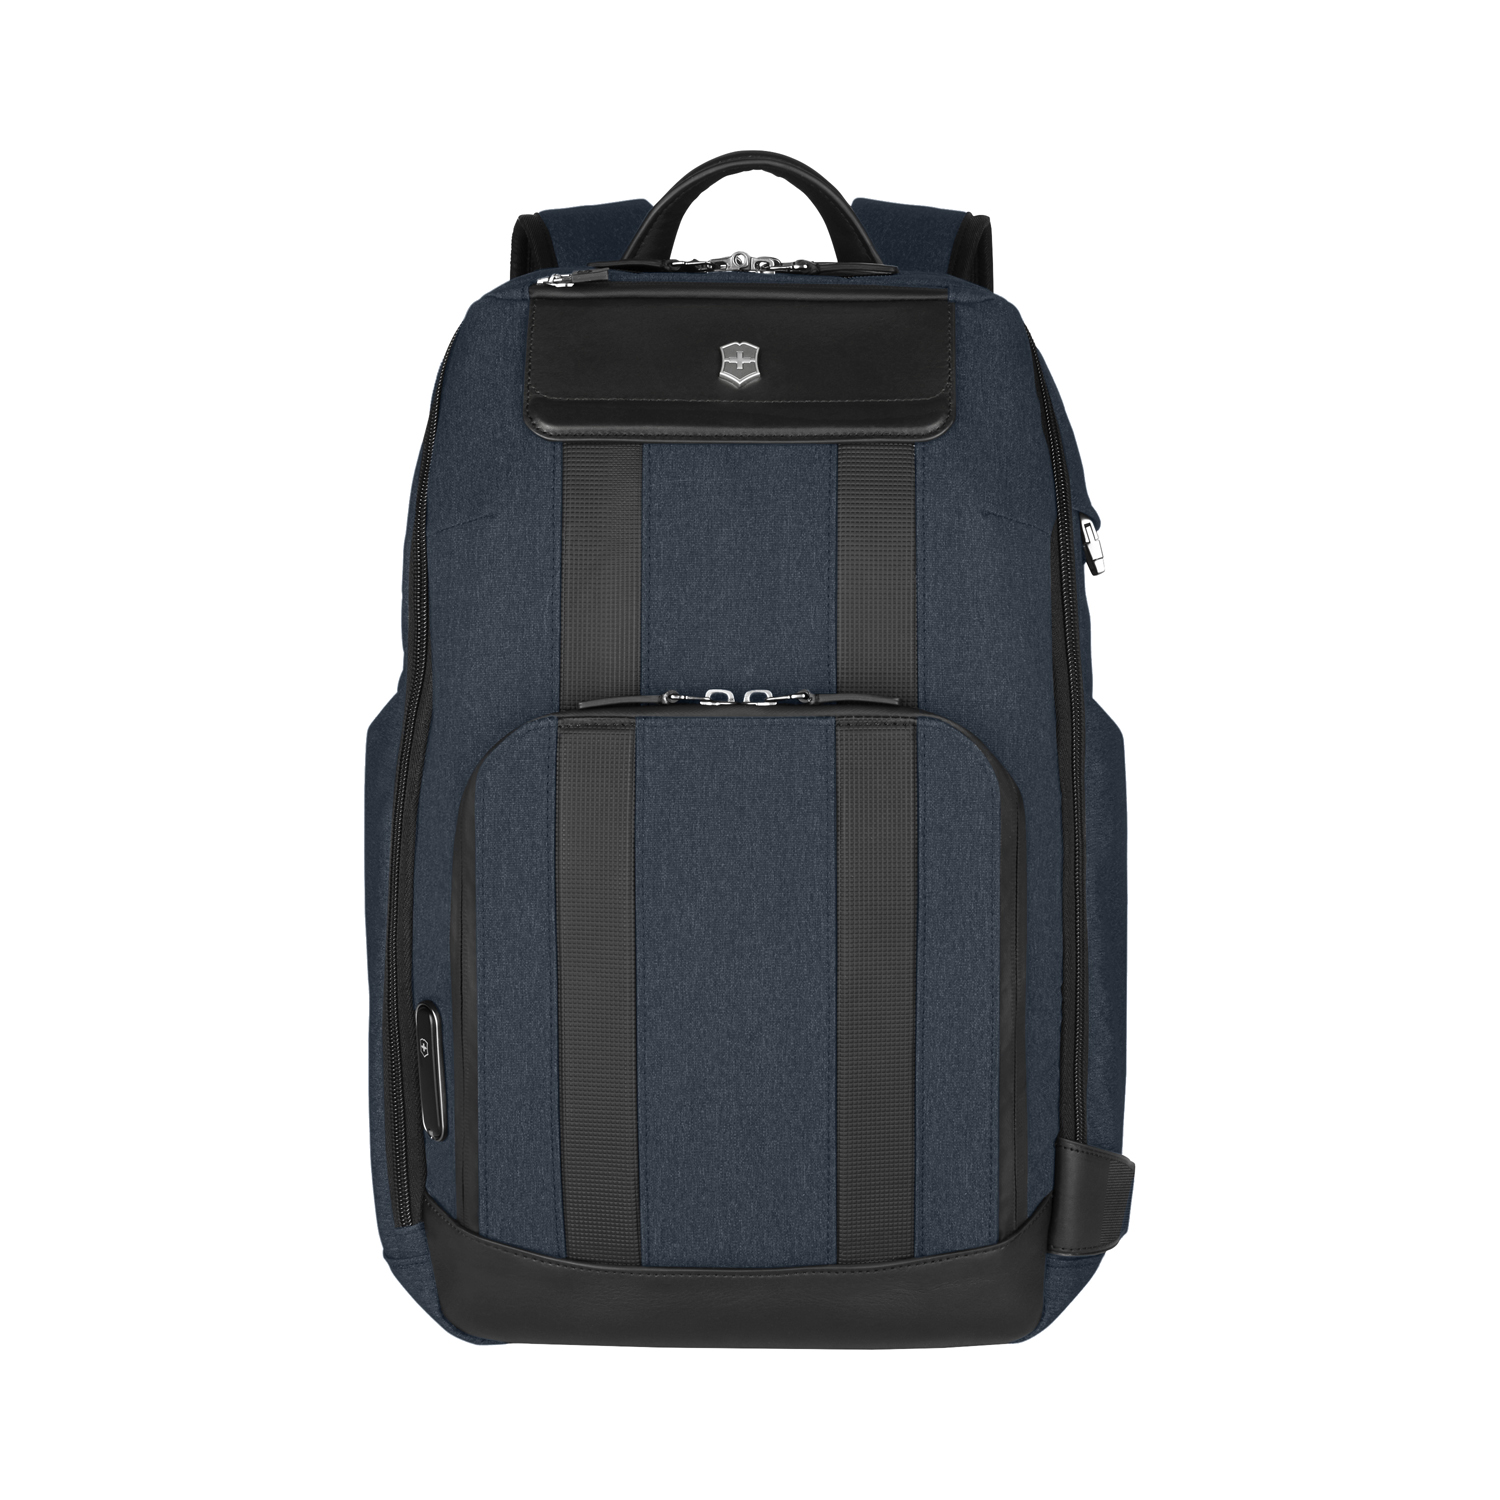 Рюкзак VICTORINOX Architecture Urban 2 Deluxe Backpack 15”, синий, полиэстер/кожа, 31x23x46 см, 23 л